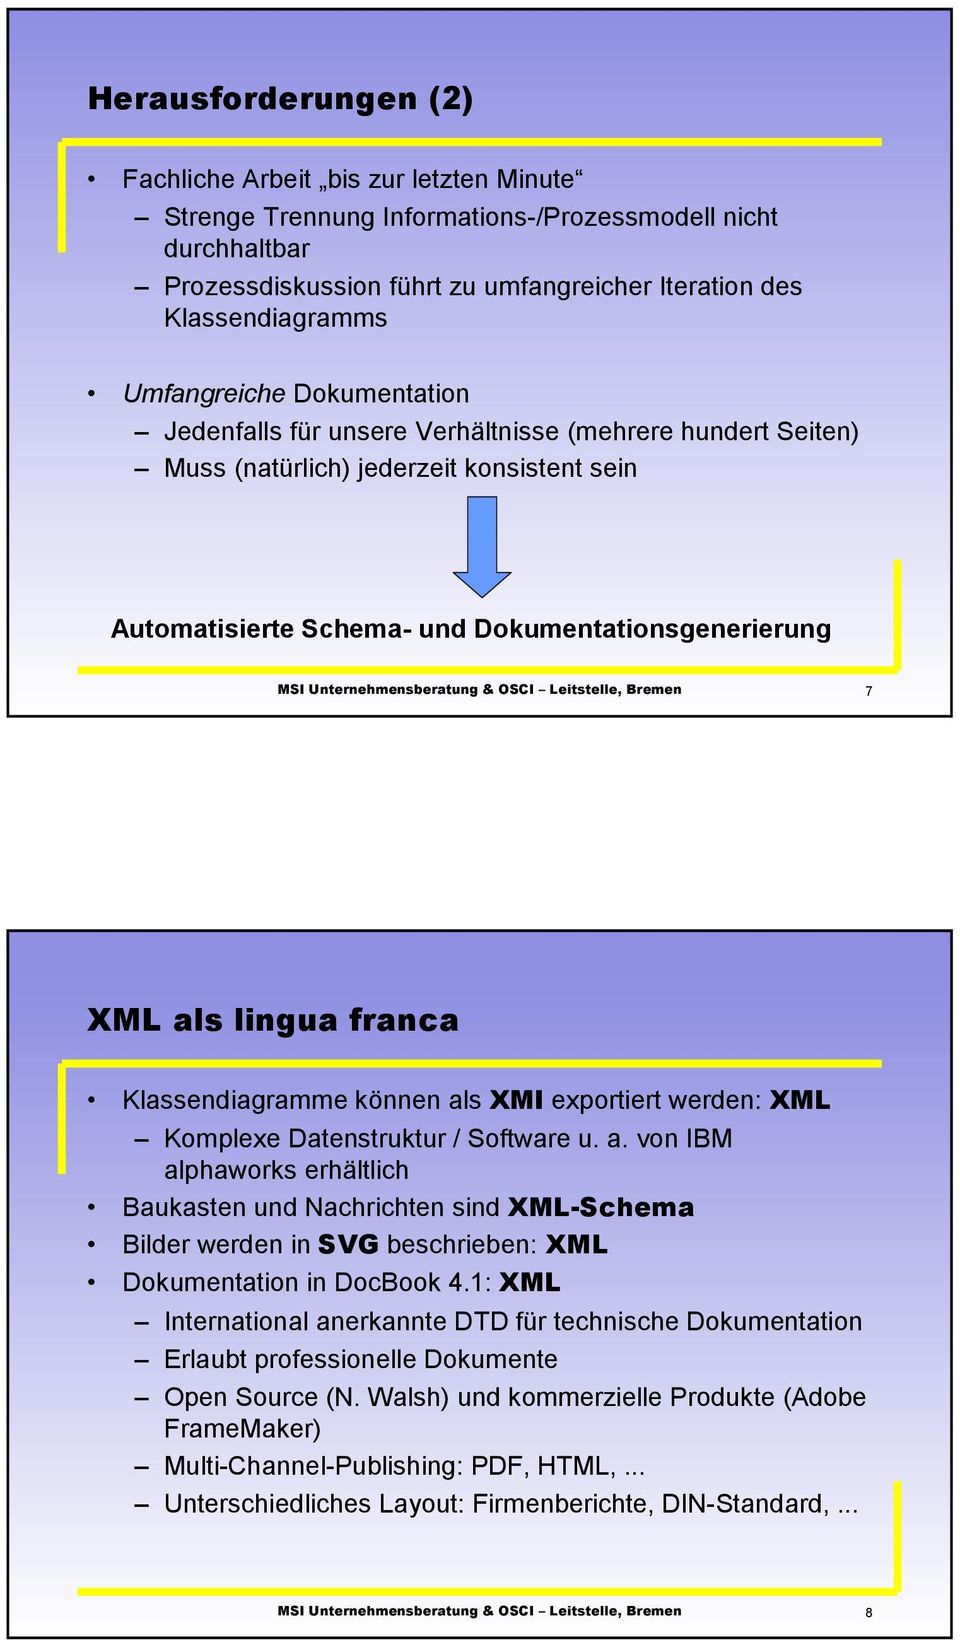 franca Klassendiagramme können als XMI exportiert werden: XML Komplexe Datenstruktur / Software u. a. von IBM alphaworks erhältlich Baukasten und Nachrichten sind XML-Schema Bilder werden in SVG beschrieben: XML Dokumentation in DocBook 4.